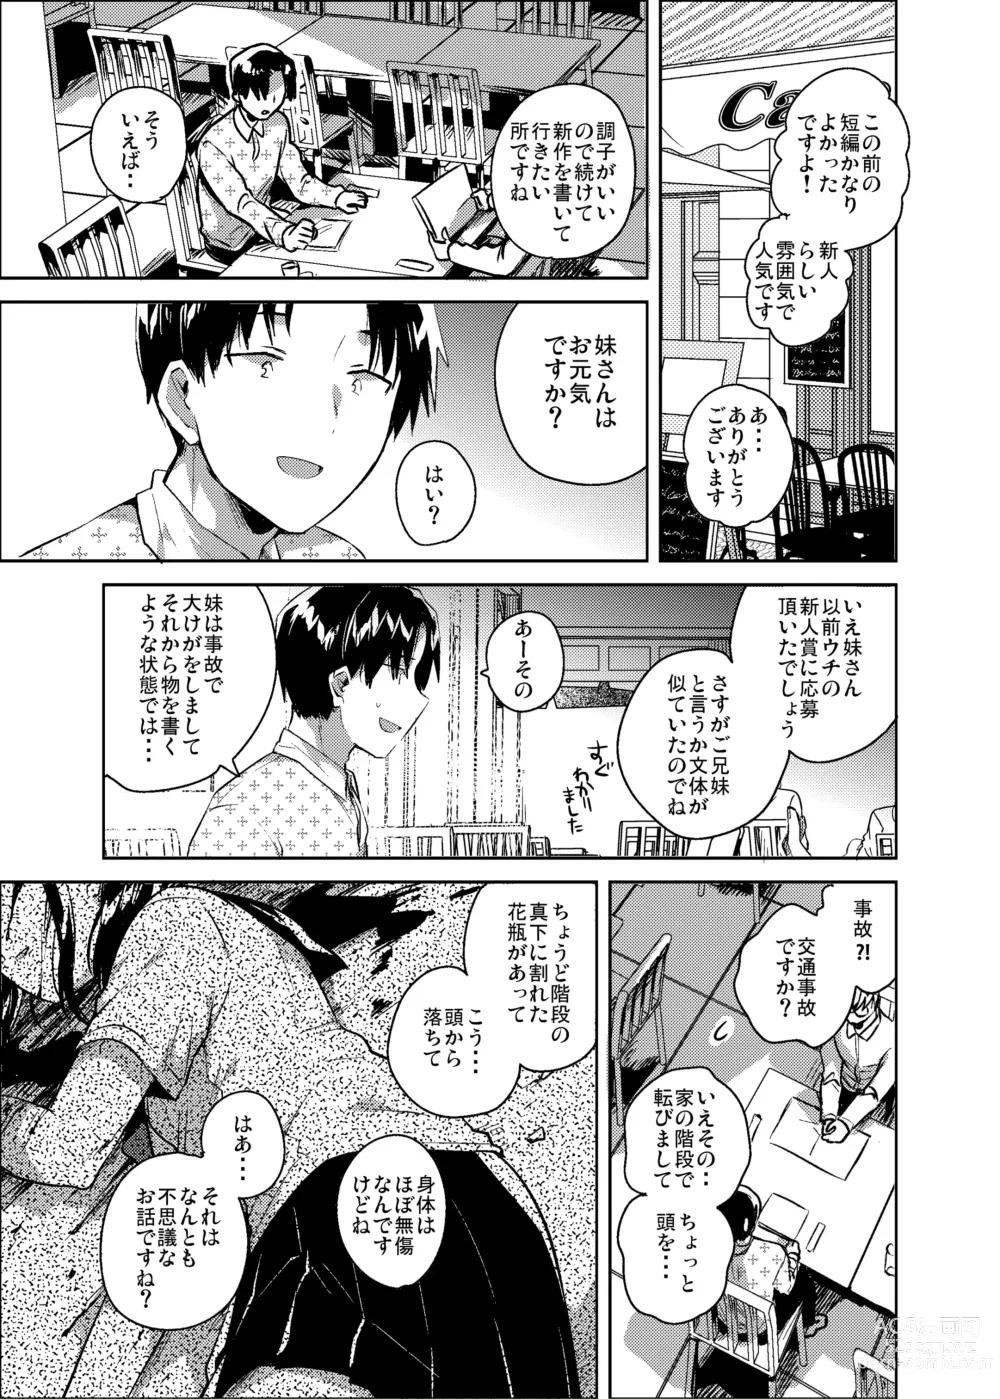 Page 2 of doujinshi Imouto wa Kanji ga Yomenai